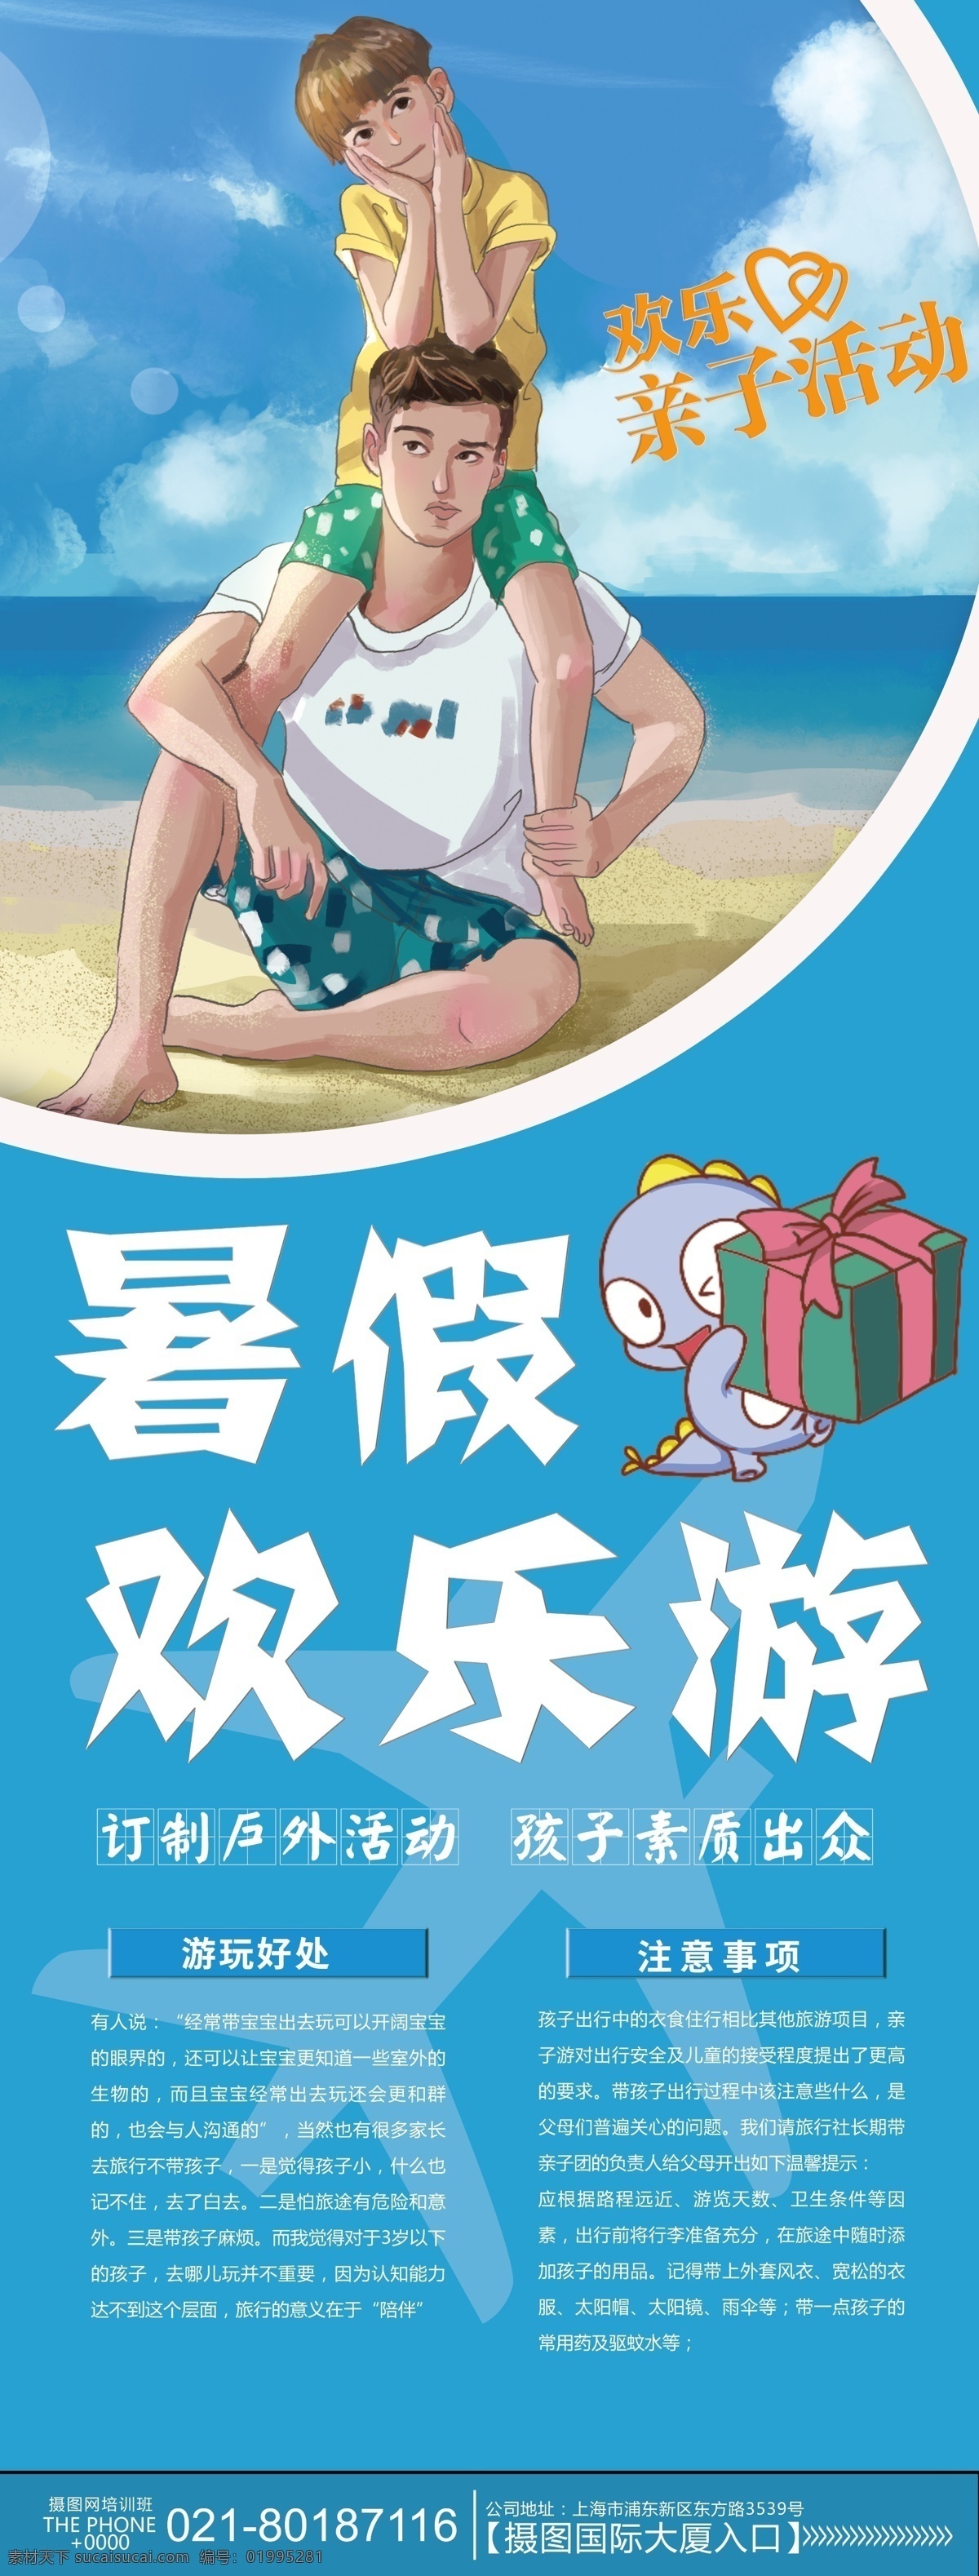 暑假 亲子 欢乐 游 展架 假期 旅游 蓝色 活动 展架设计 暑假游 亲子游 易拉宝 ip形象